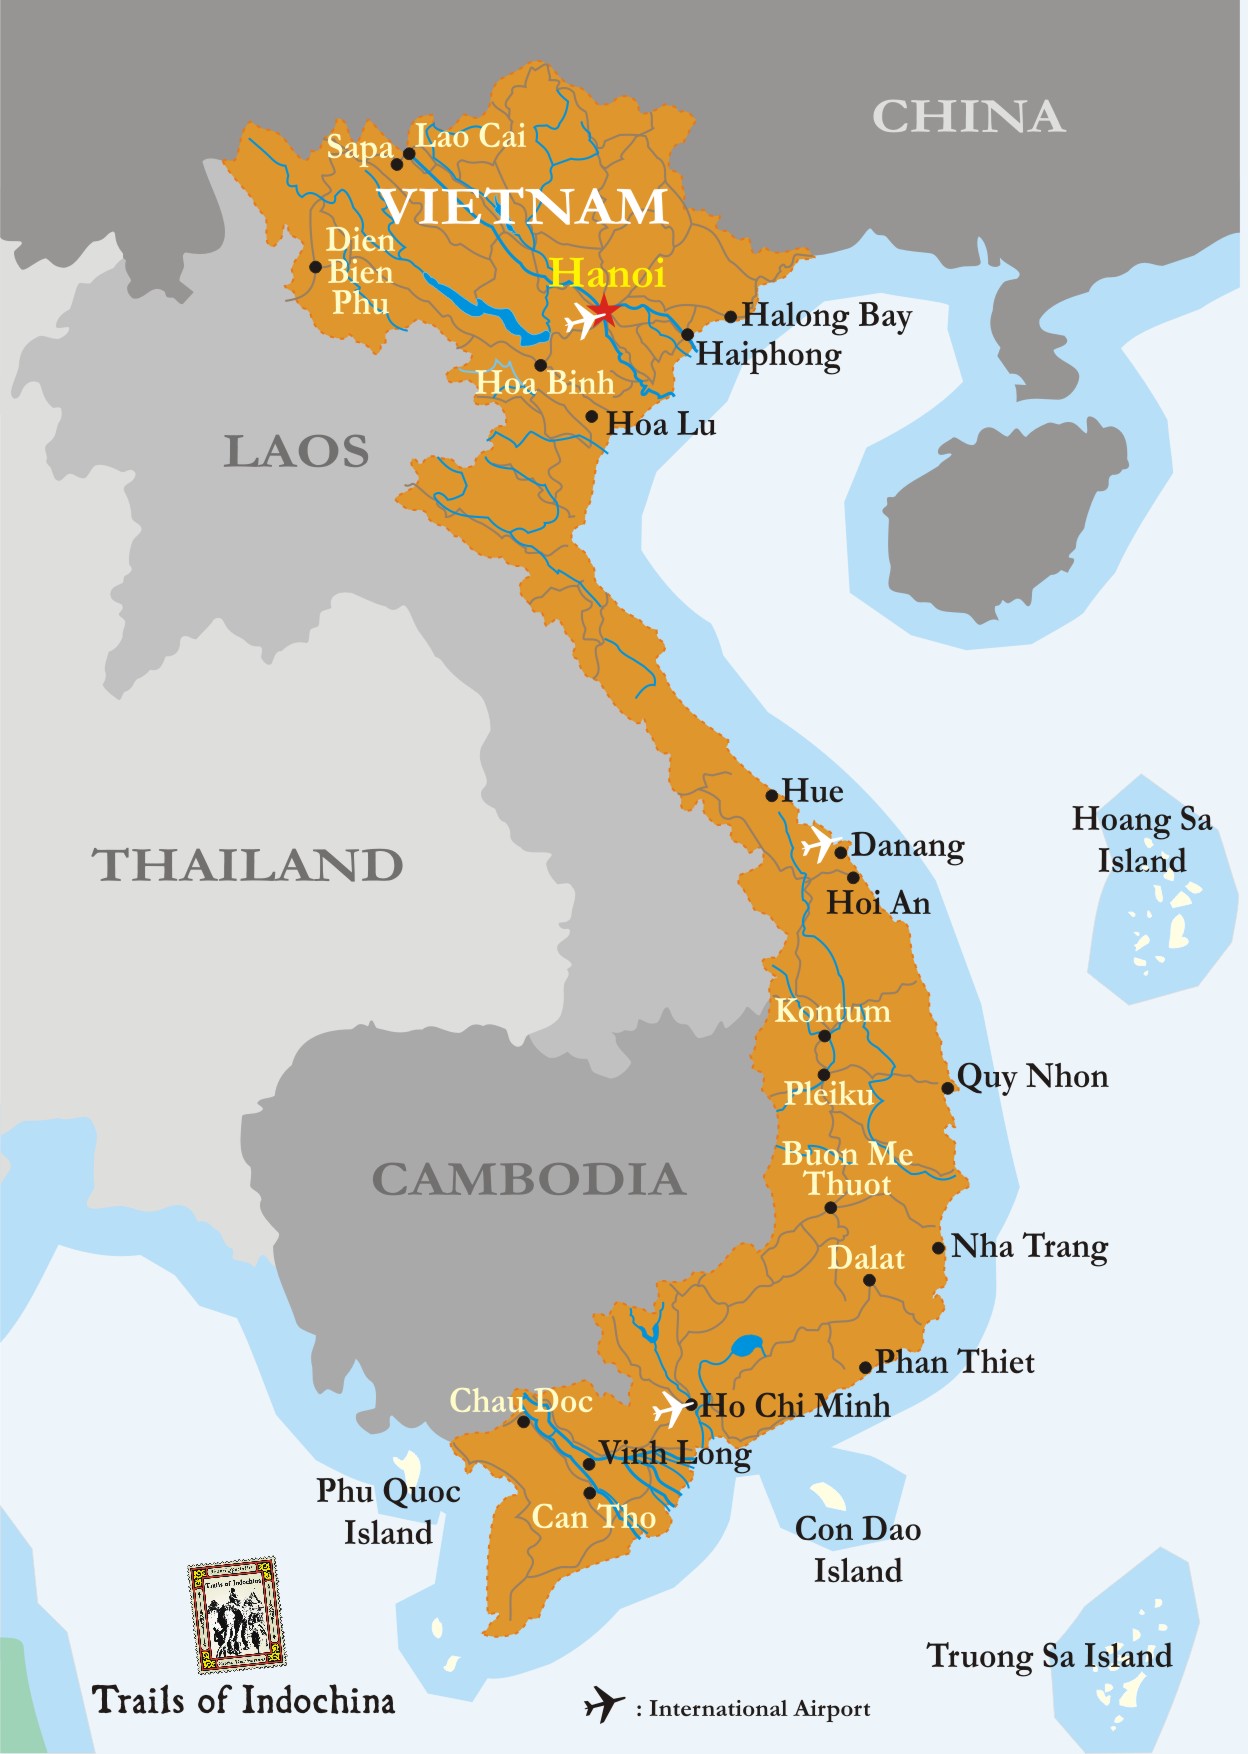 Un voyage au Vietnam tout simplement génial